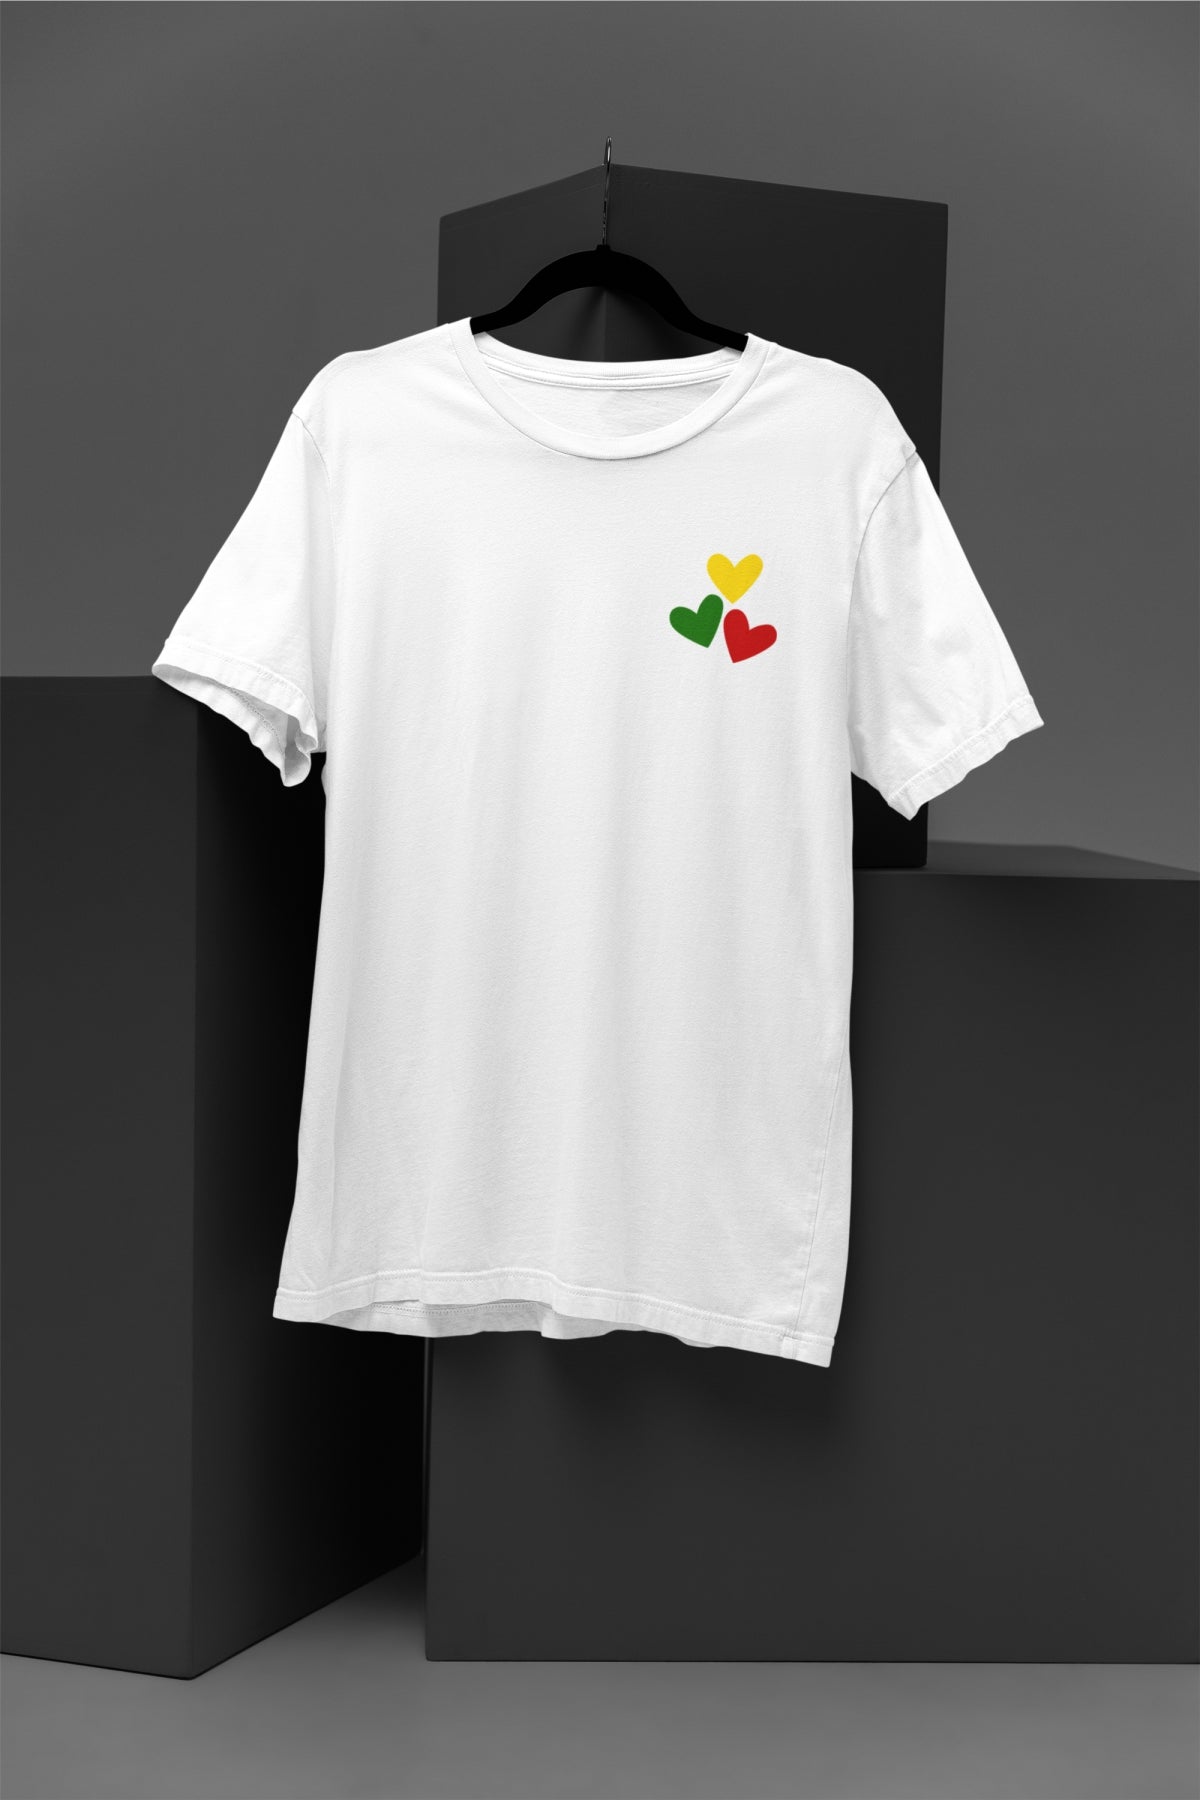 Balti UNISEX marškinėliai "Trys lietuviškos širdelės" PASKUTINIAI VIENETAI (Crimson)